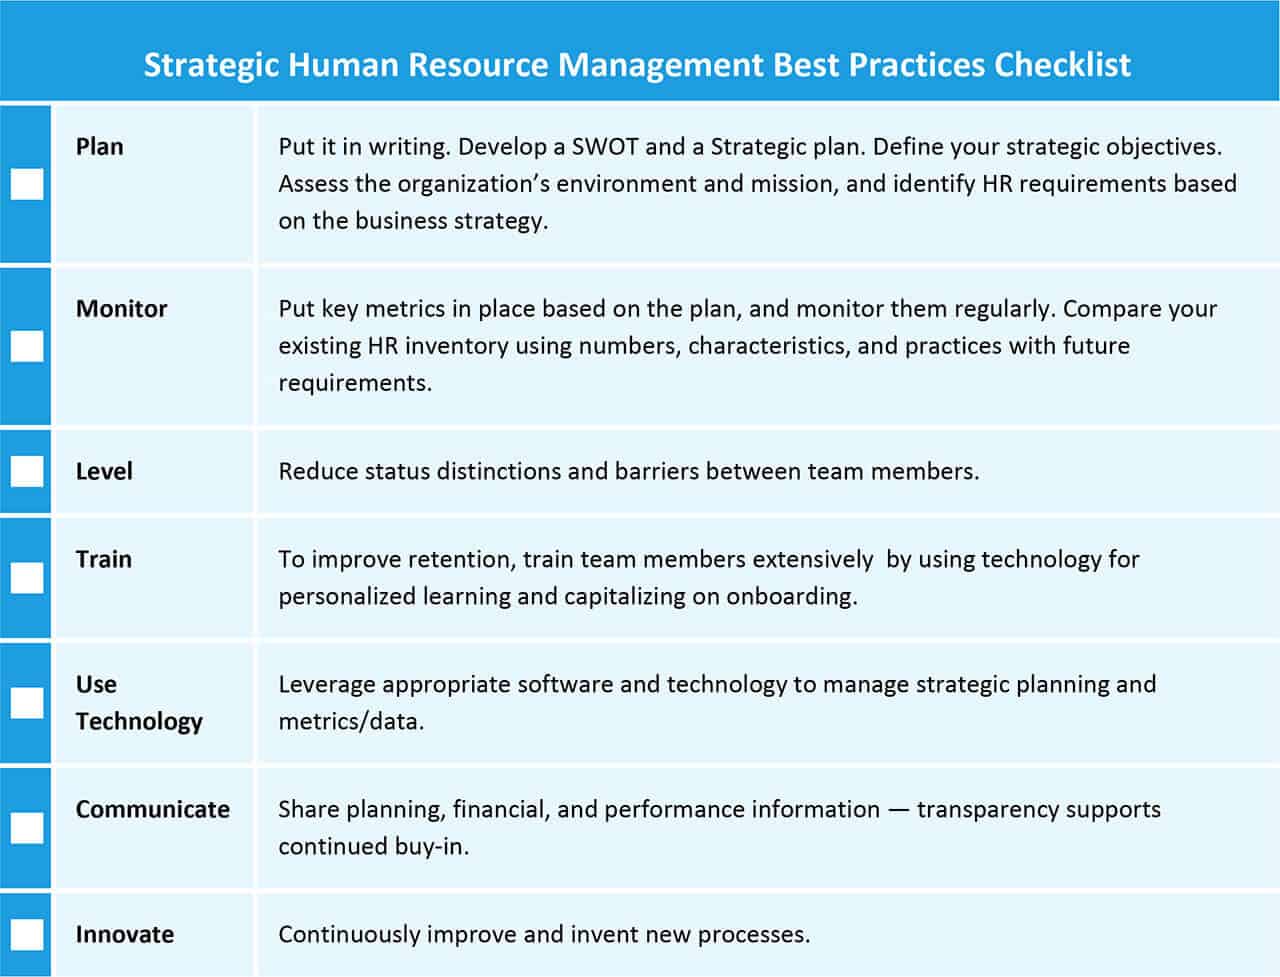 战略人力资源管理最佳实践清单